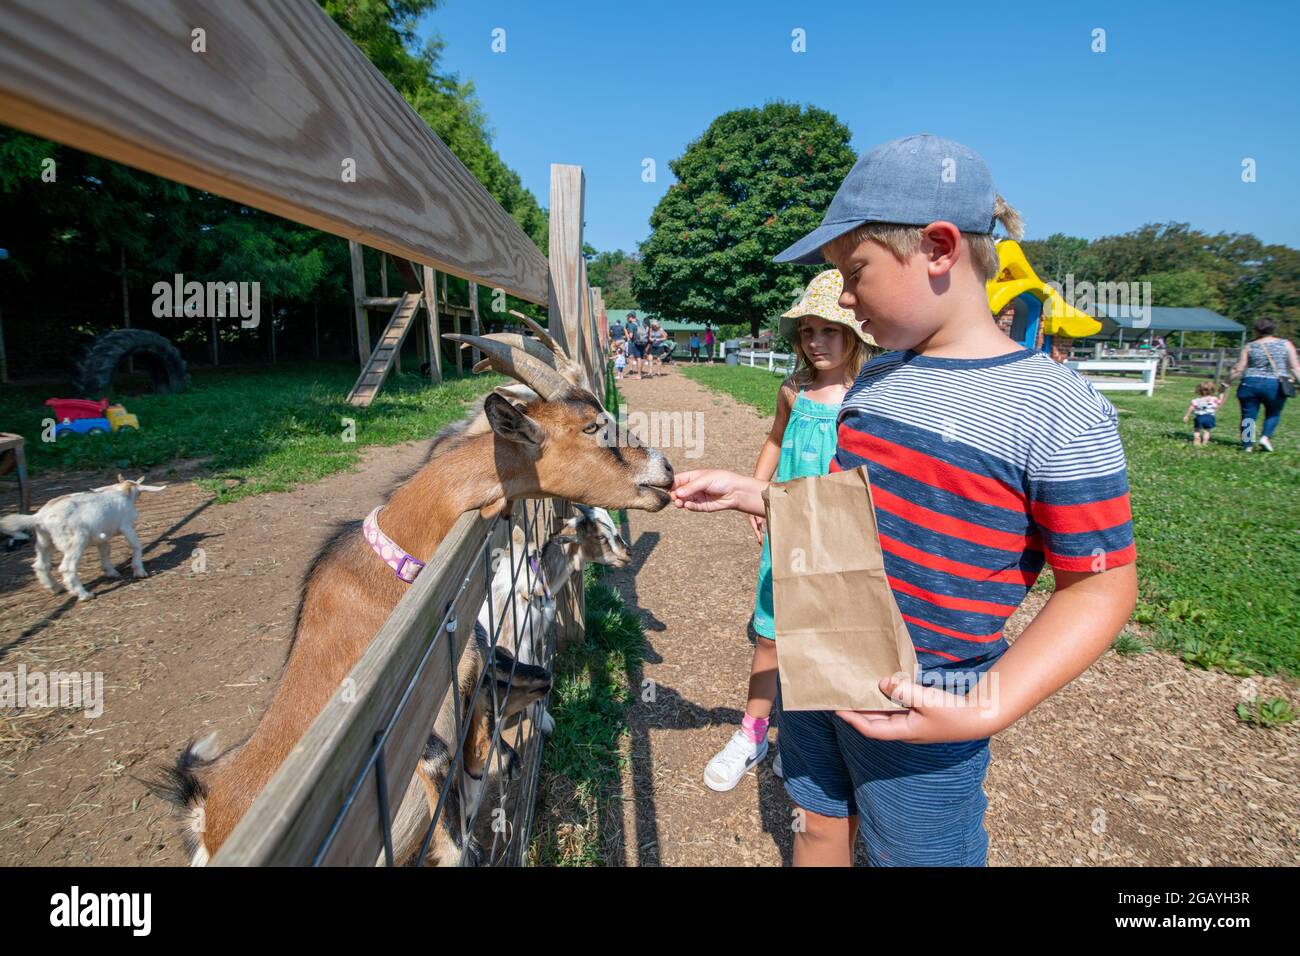 Un jeune garçon nourrit une chèvre dans une ferme familiale de petting dans le comté de Howard, Maryland, États-Unis Banque D'Images